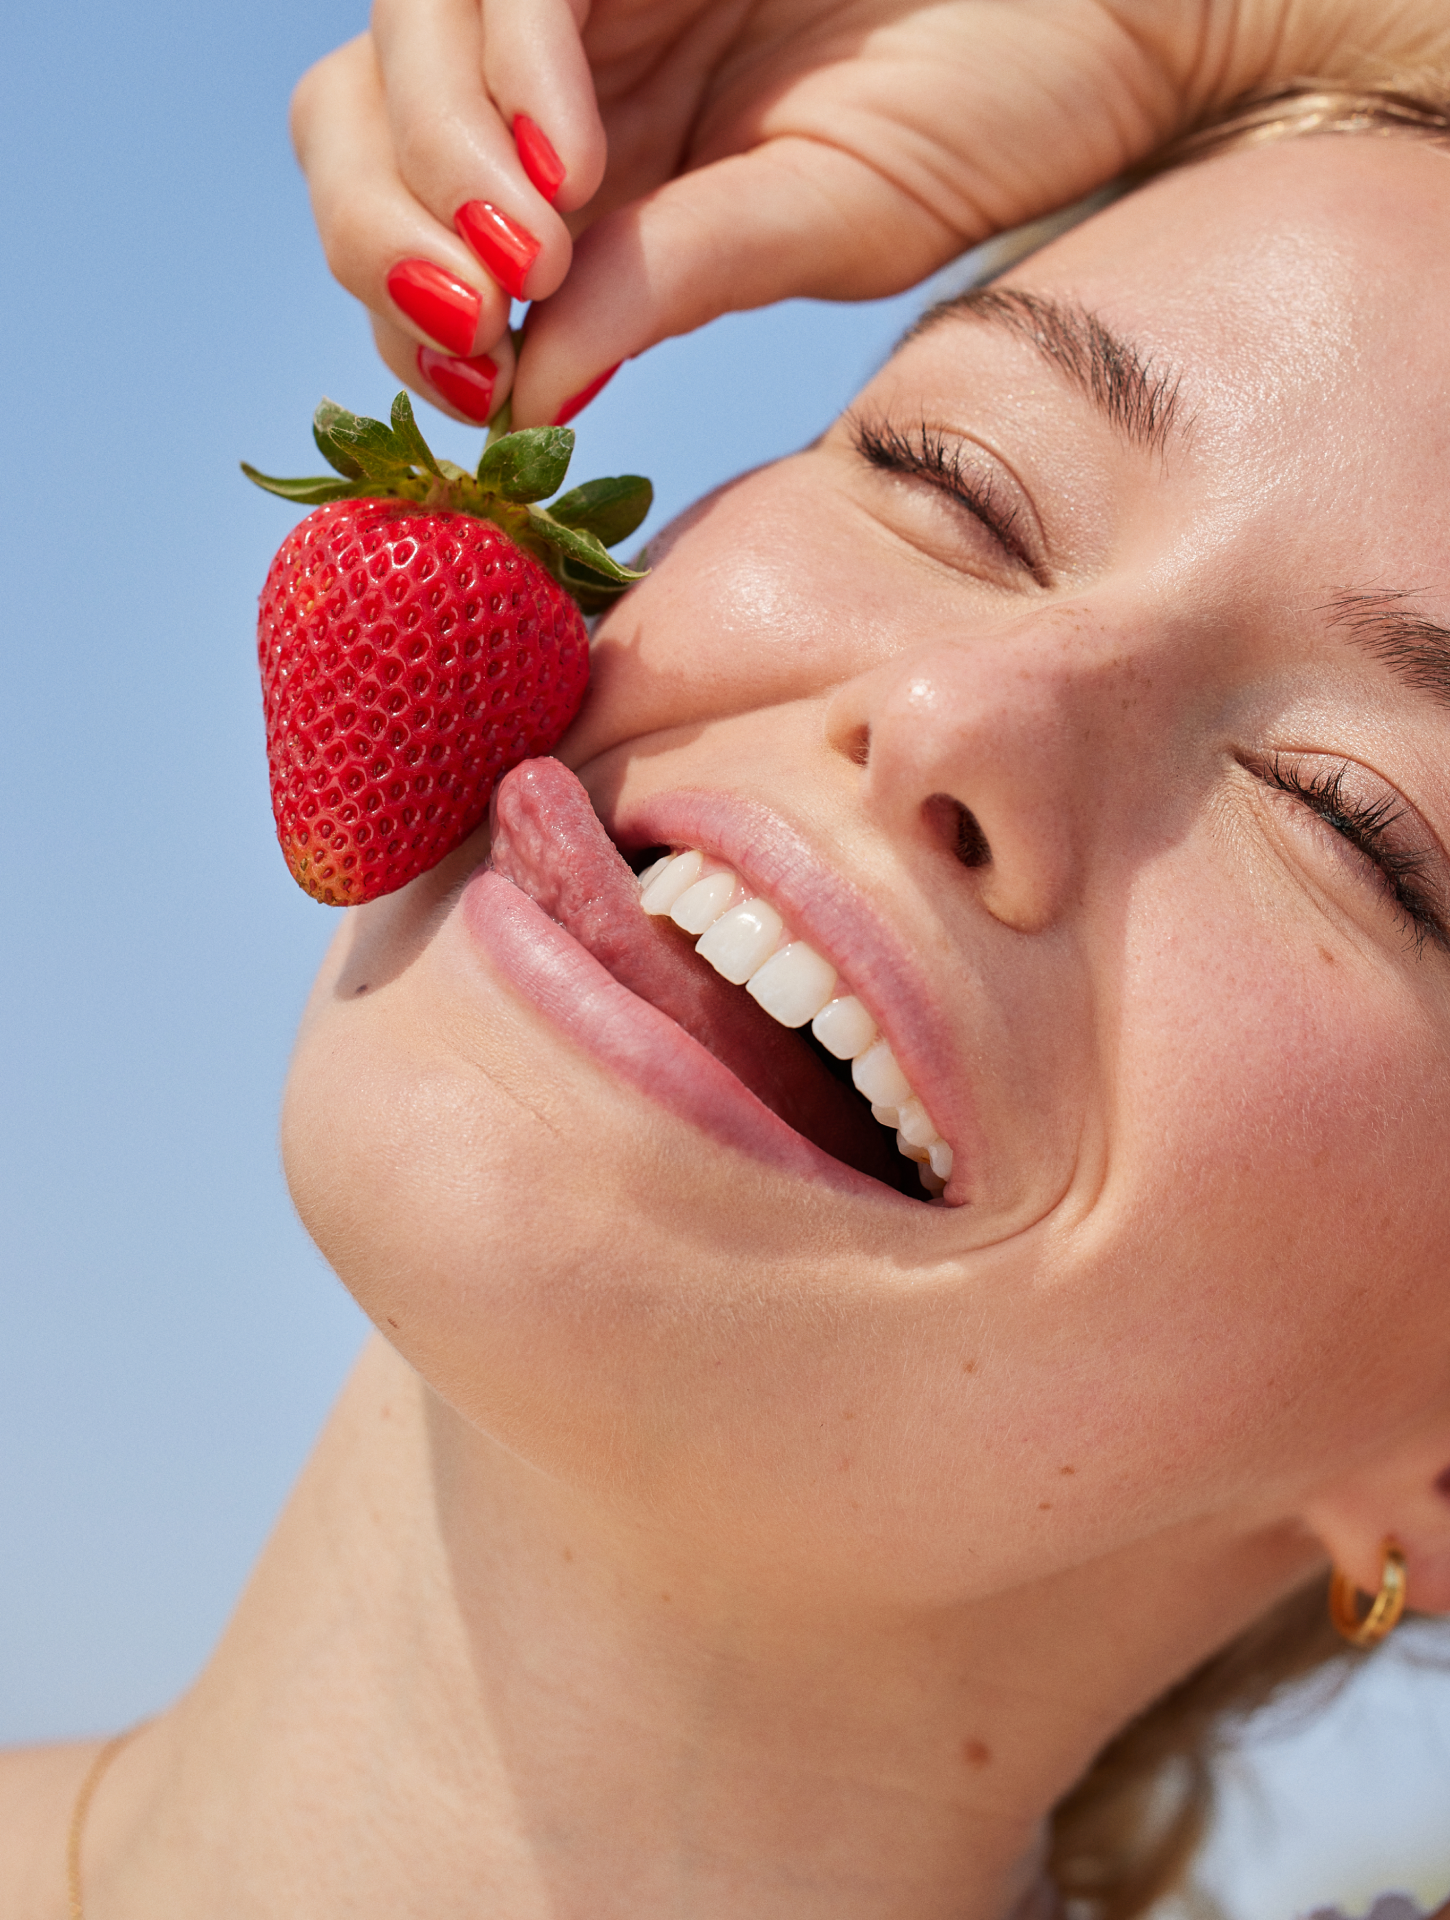 Girl holding strawberry and smiling joyfully 